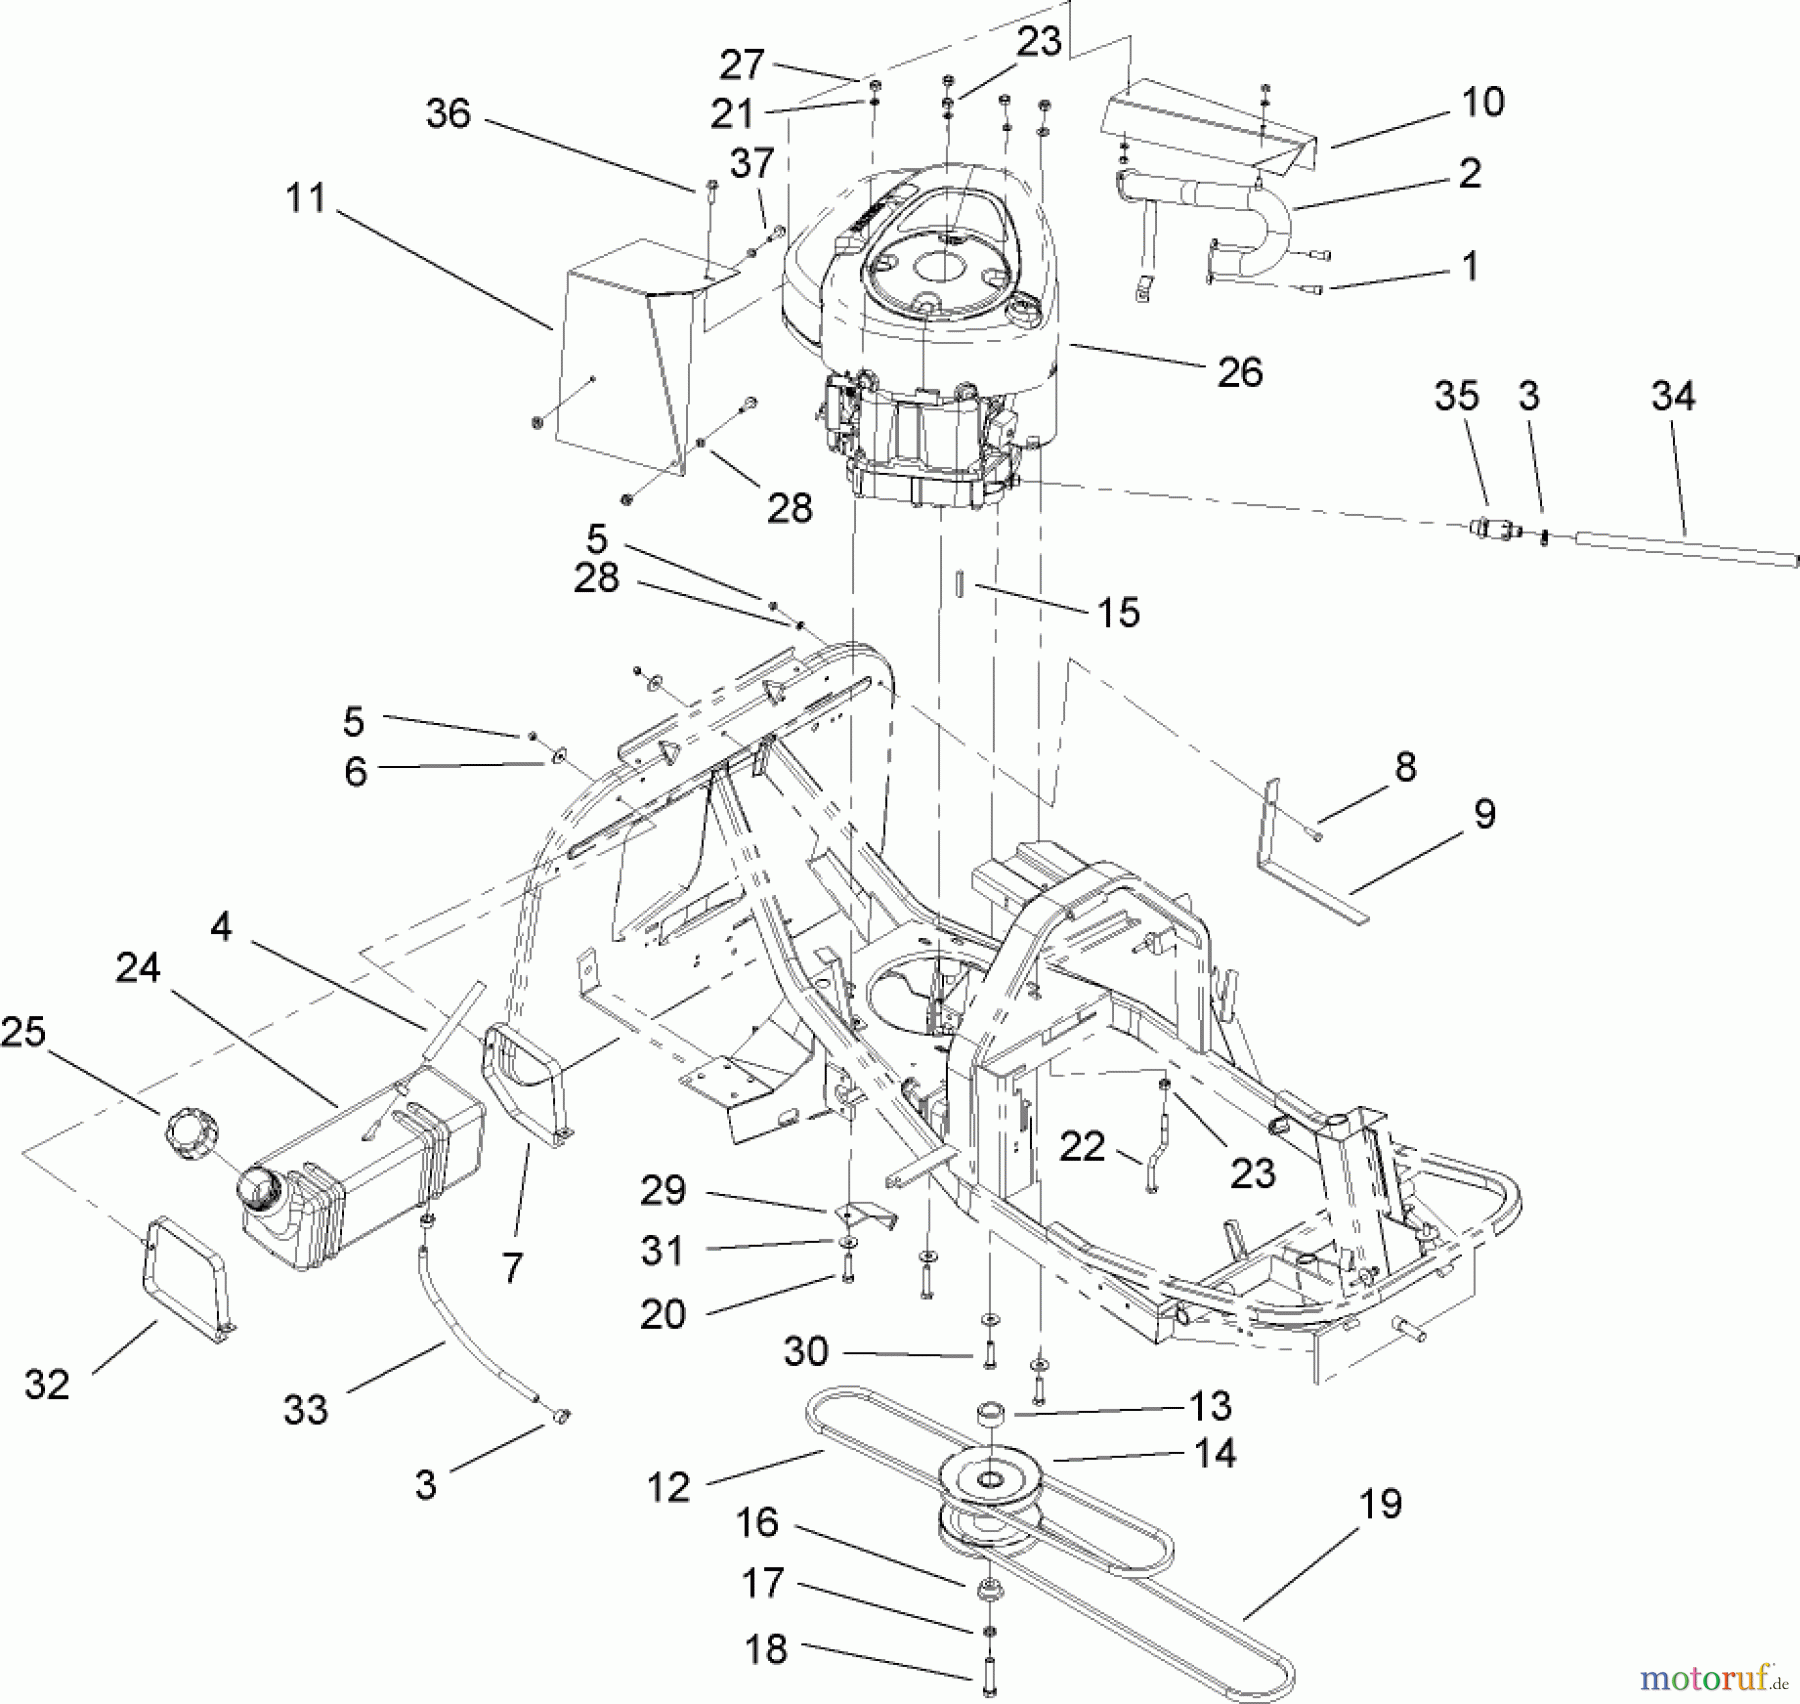  Toro Neu Mowers, Rear-Engine Rider 70185 (G132) - Toro G132 Rear-Engine Riding Mower, 2007 (270000001-270805705) ENGINE AND FUEL TANK ASSEMBLY